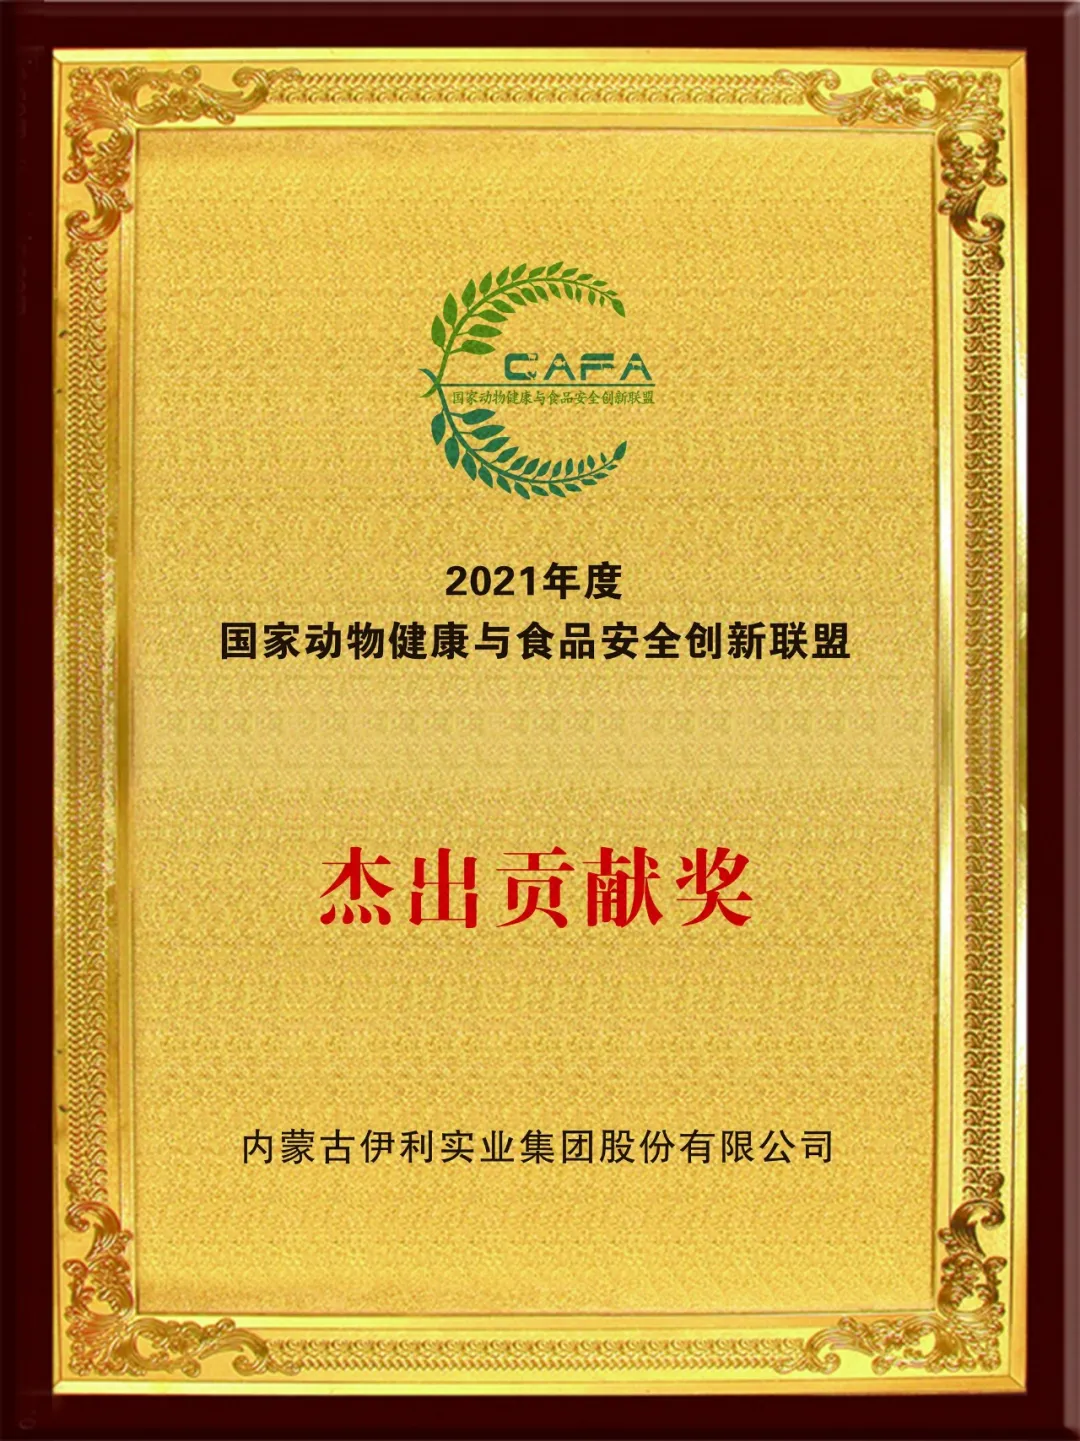 伊利荣获中国动物健康与食品安全大会2021年度“杰出贡献奖”